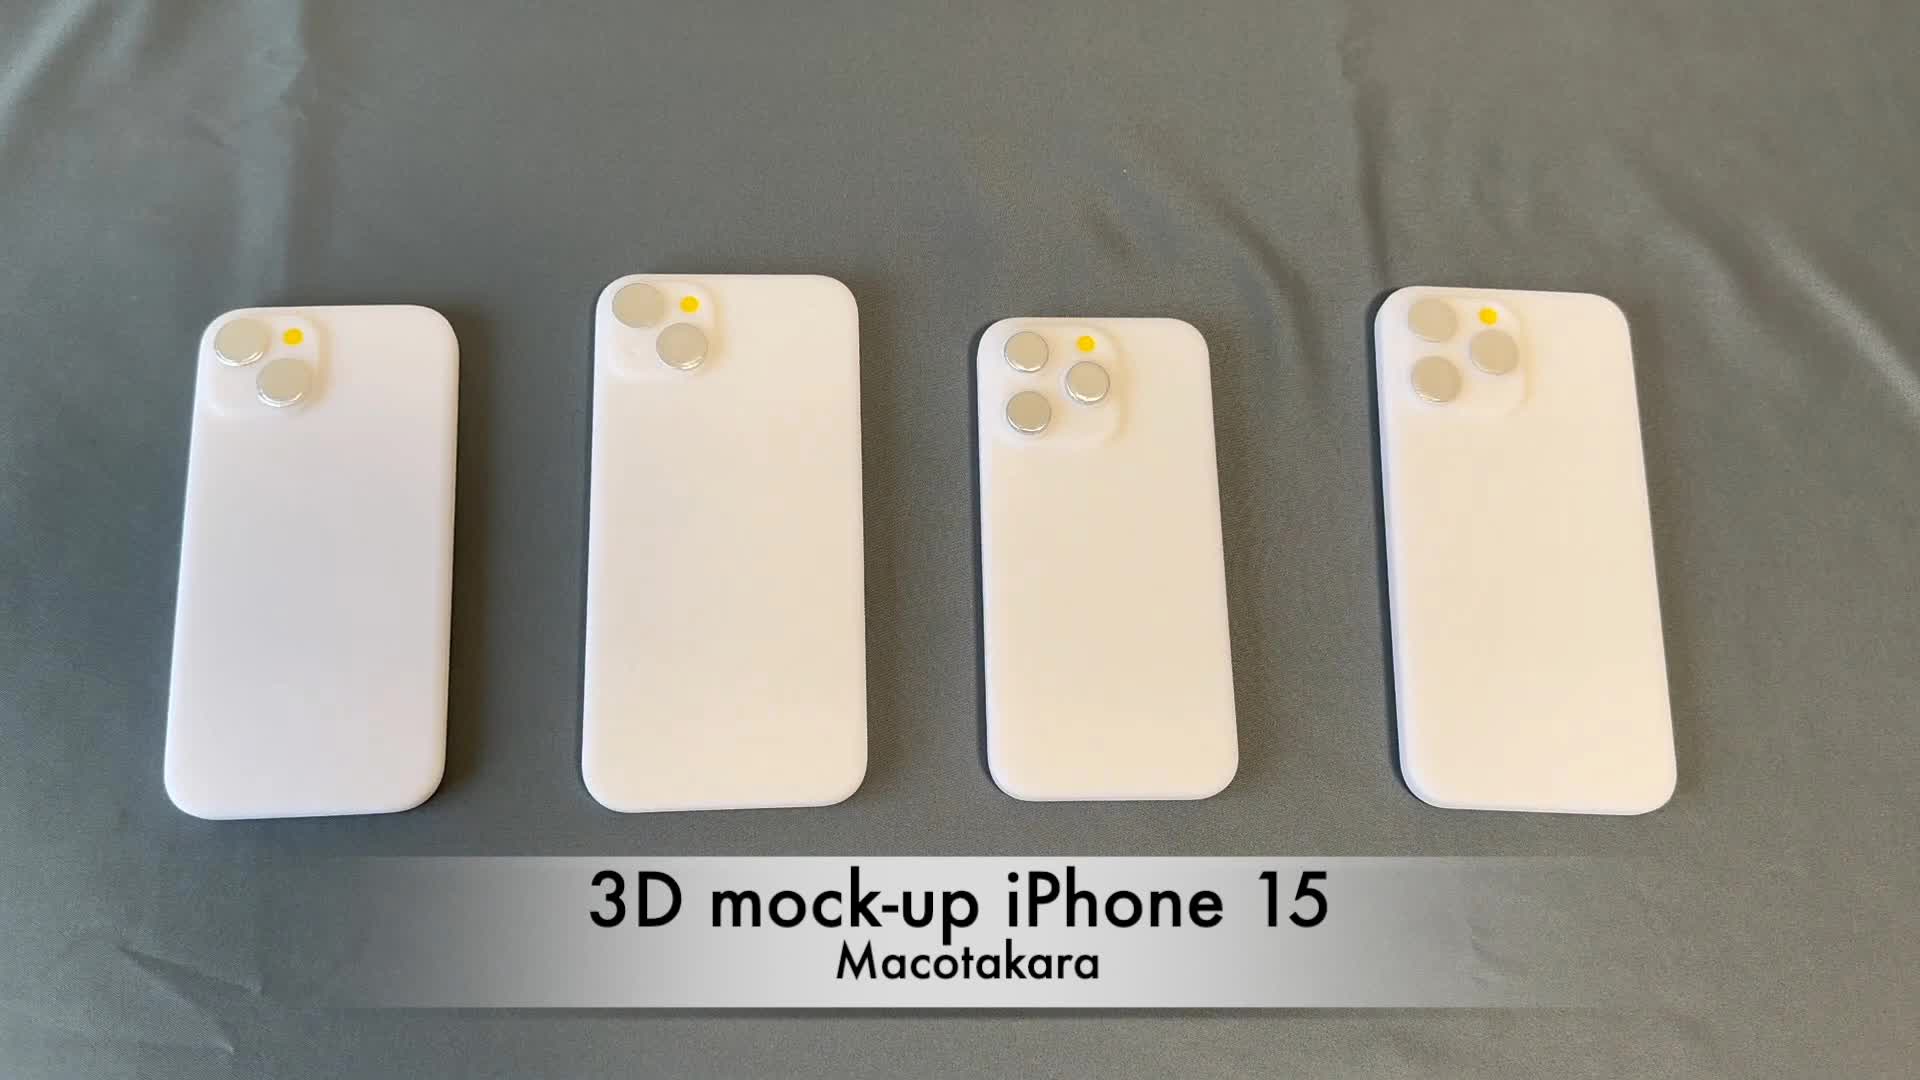 Mô hình bộ 4 iPhone 15 lần đầu lộ diện thực tế: Viền siêu mỏng, chốt thiết kế siêu sang - ảnh 1